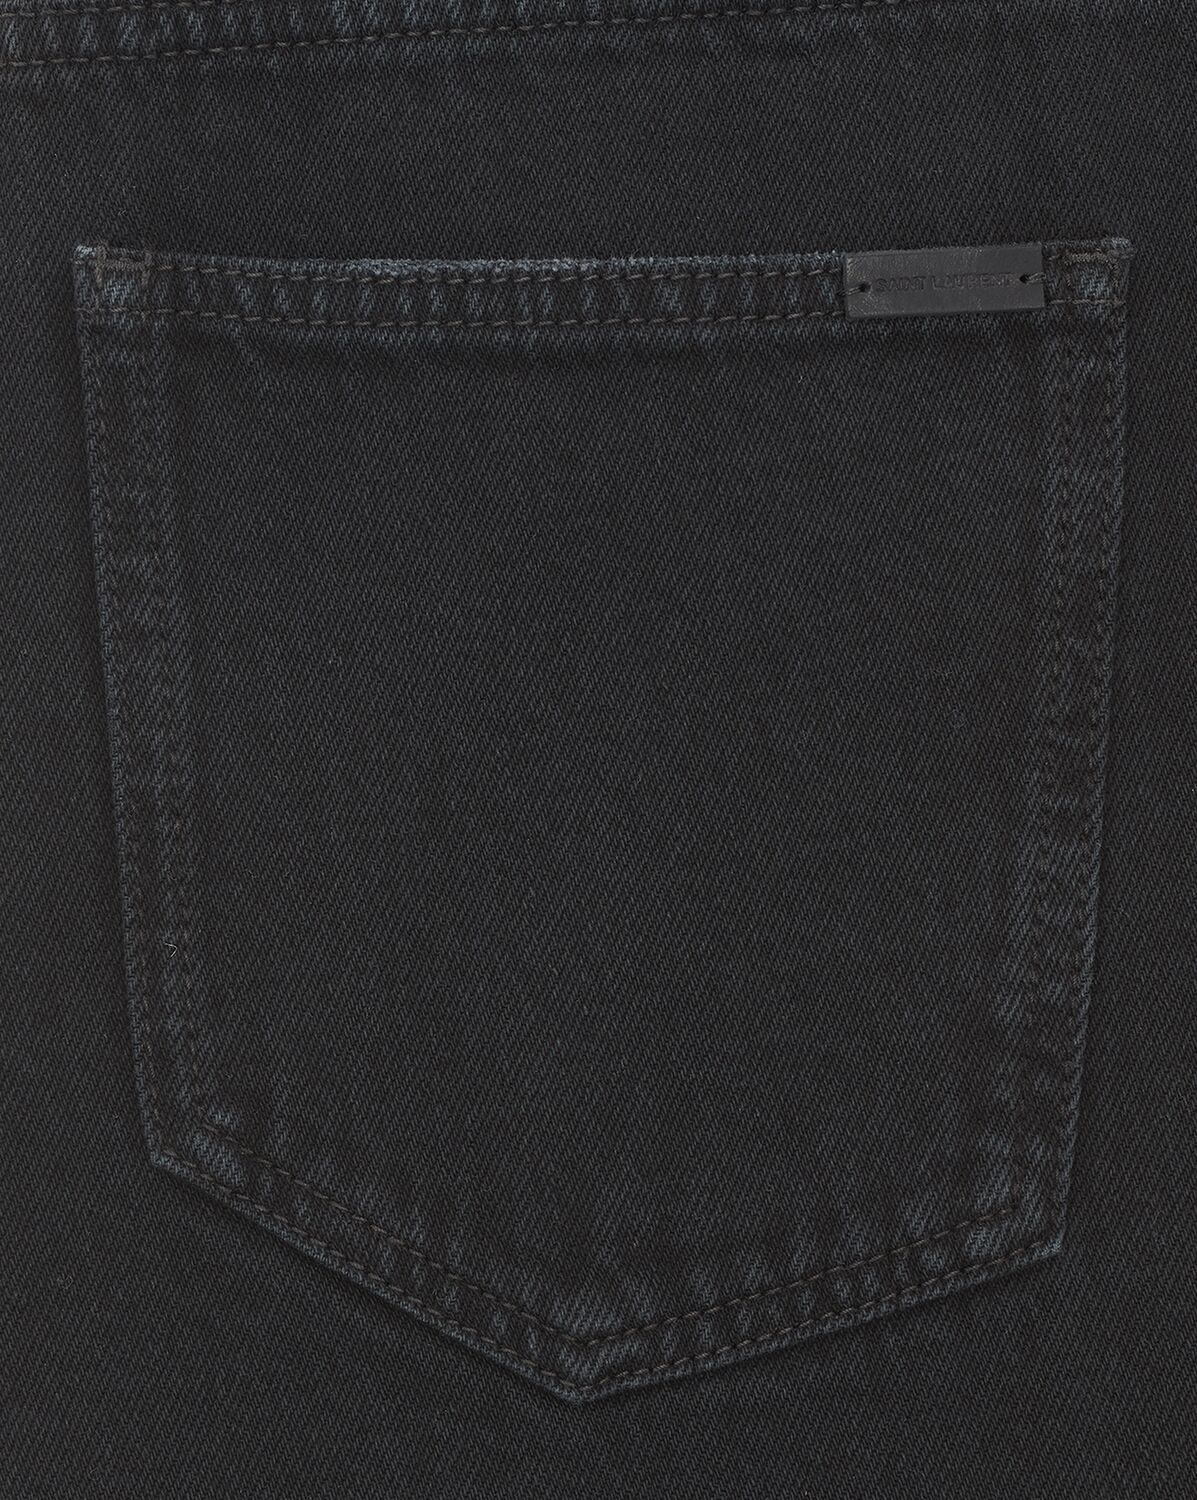 Baggy jeans in carbon black denim | Saint Laurent | YSL.com